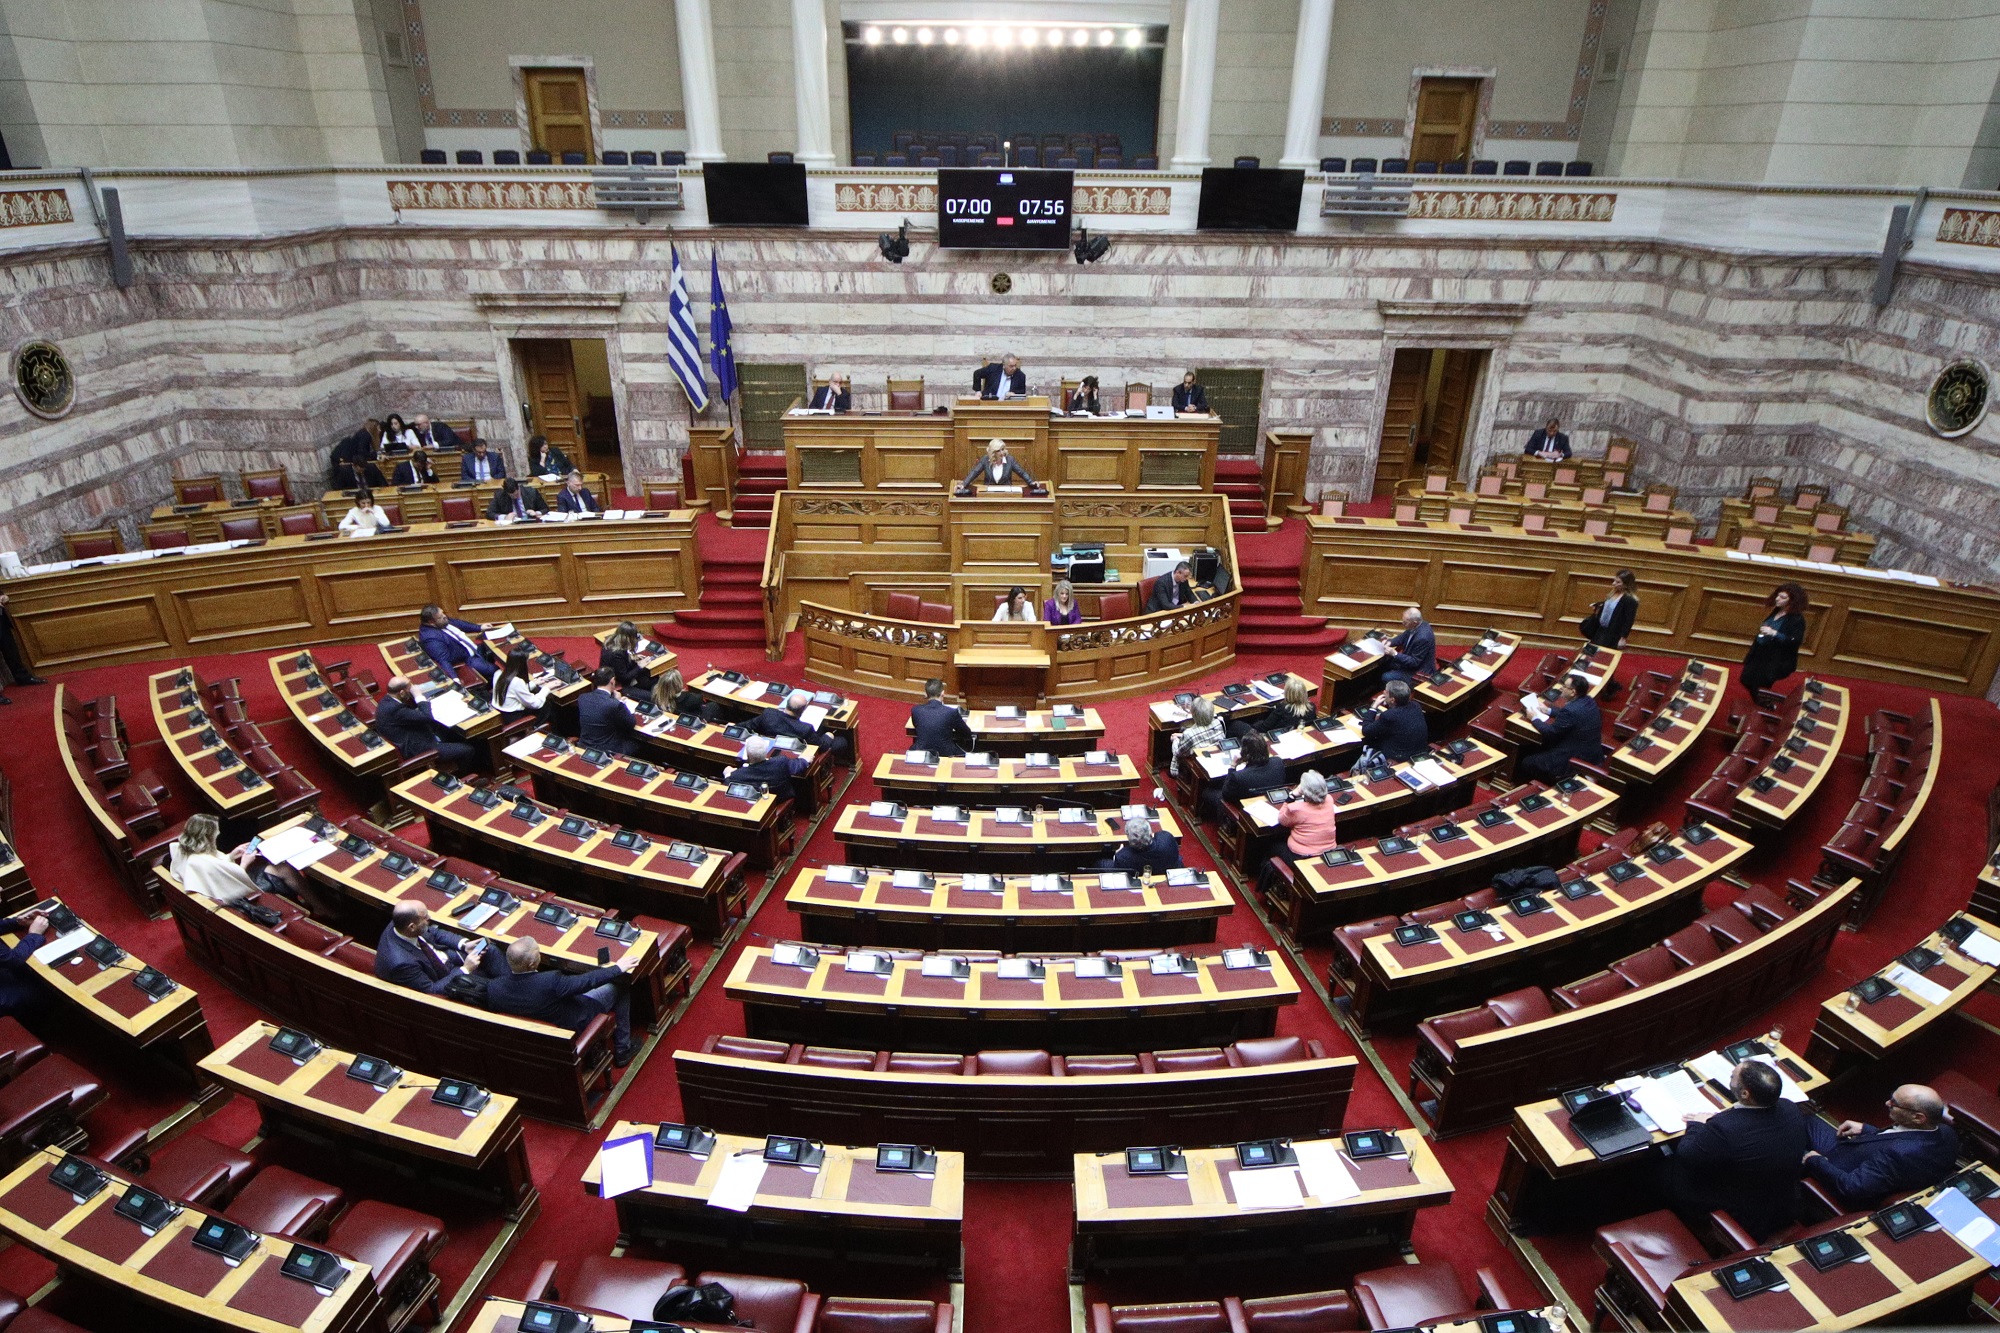 Νομοσχέδια για ομόφυλα ζευγάρια: Με διαξιφισμούς η συζήτηση στη Βουλή – Την Πέμπτη η ψηφοφορία